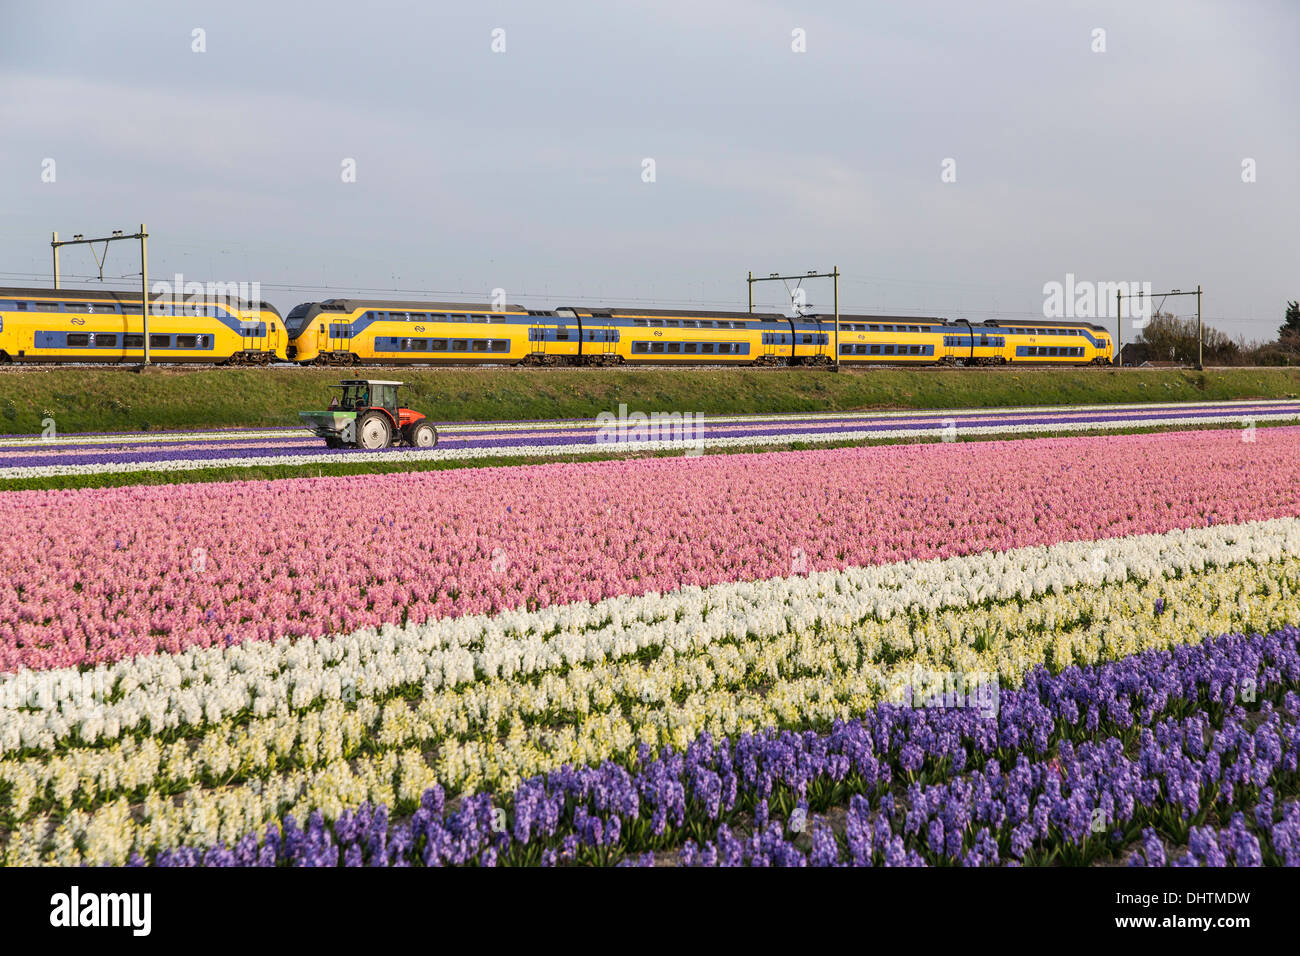 Niederlande, Vogelenzang, blühende Hyazinthen. Zug vorbei. Landwirt arbeiten auf dem Land mit Traktor Stockfoto